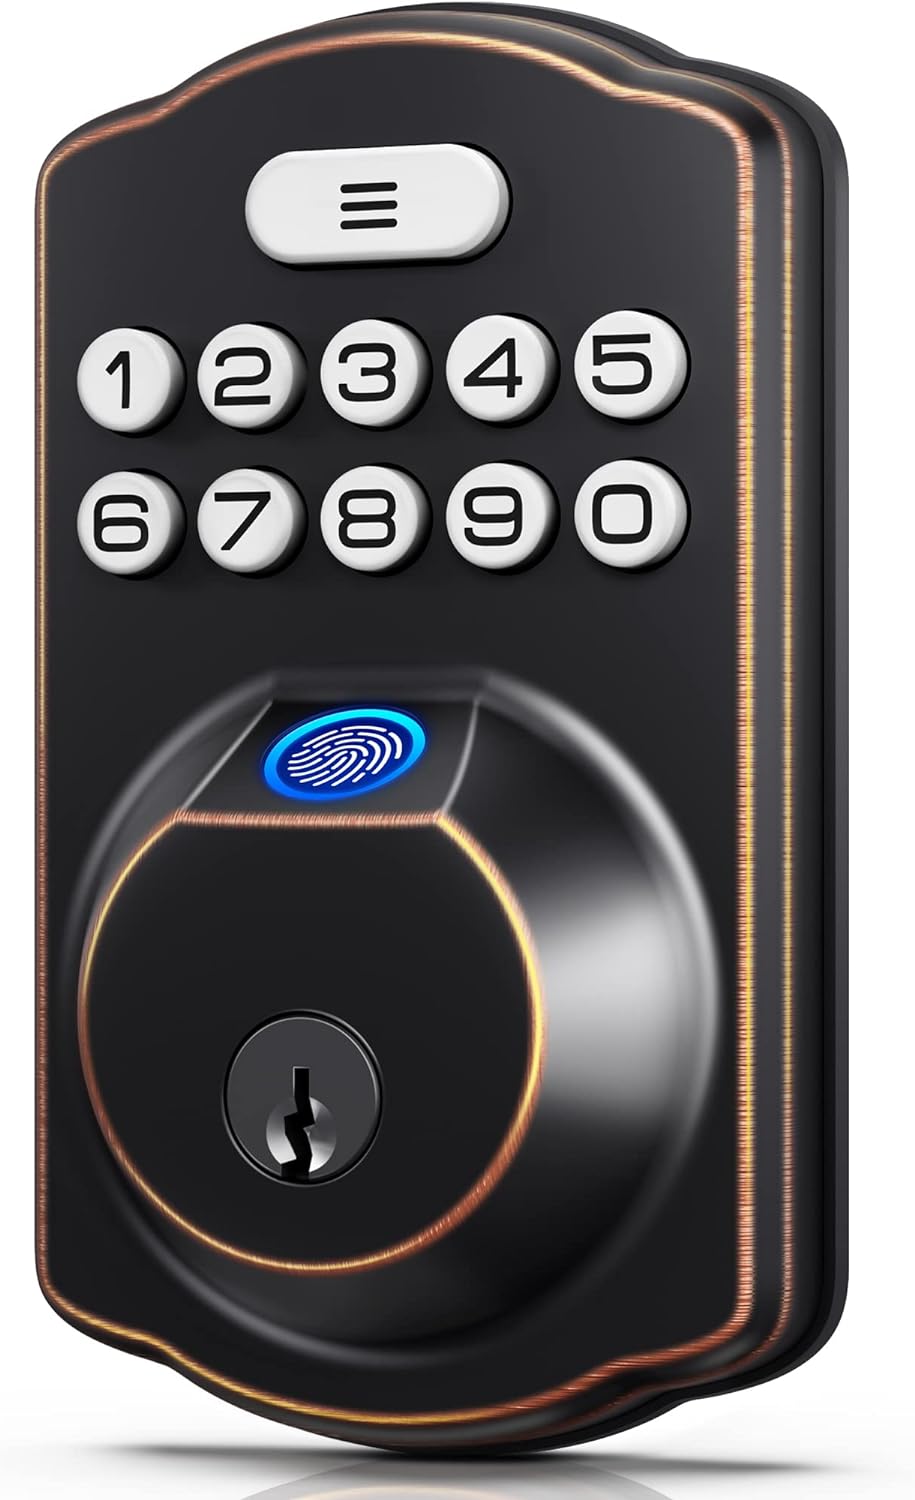 Veise keyless Entry Door Lock, keypad deadbolt